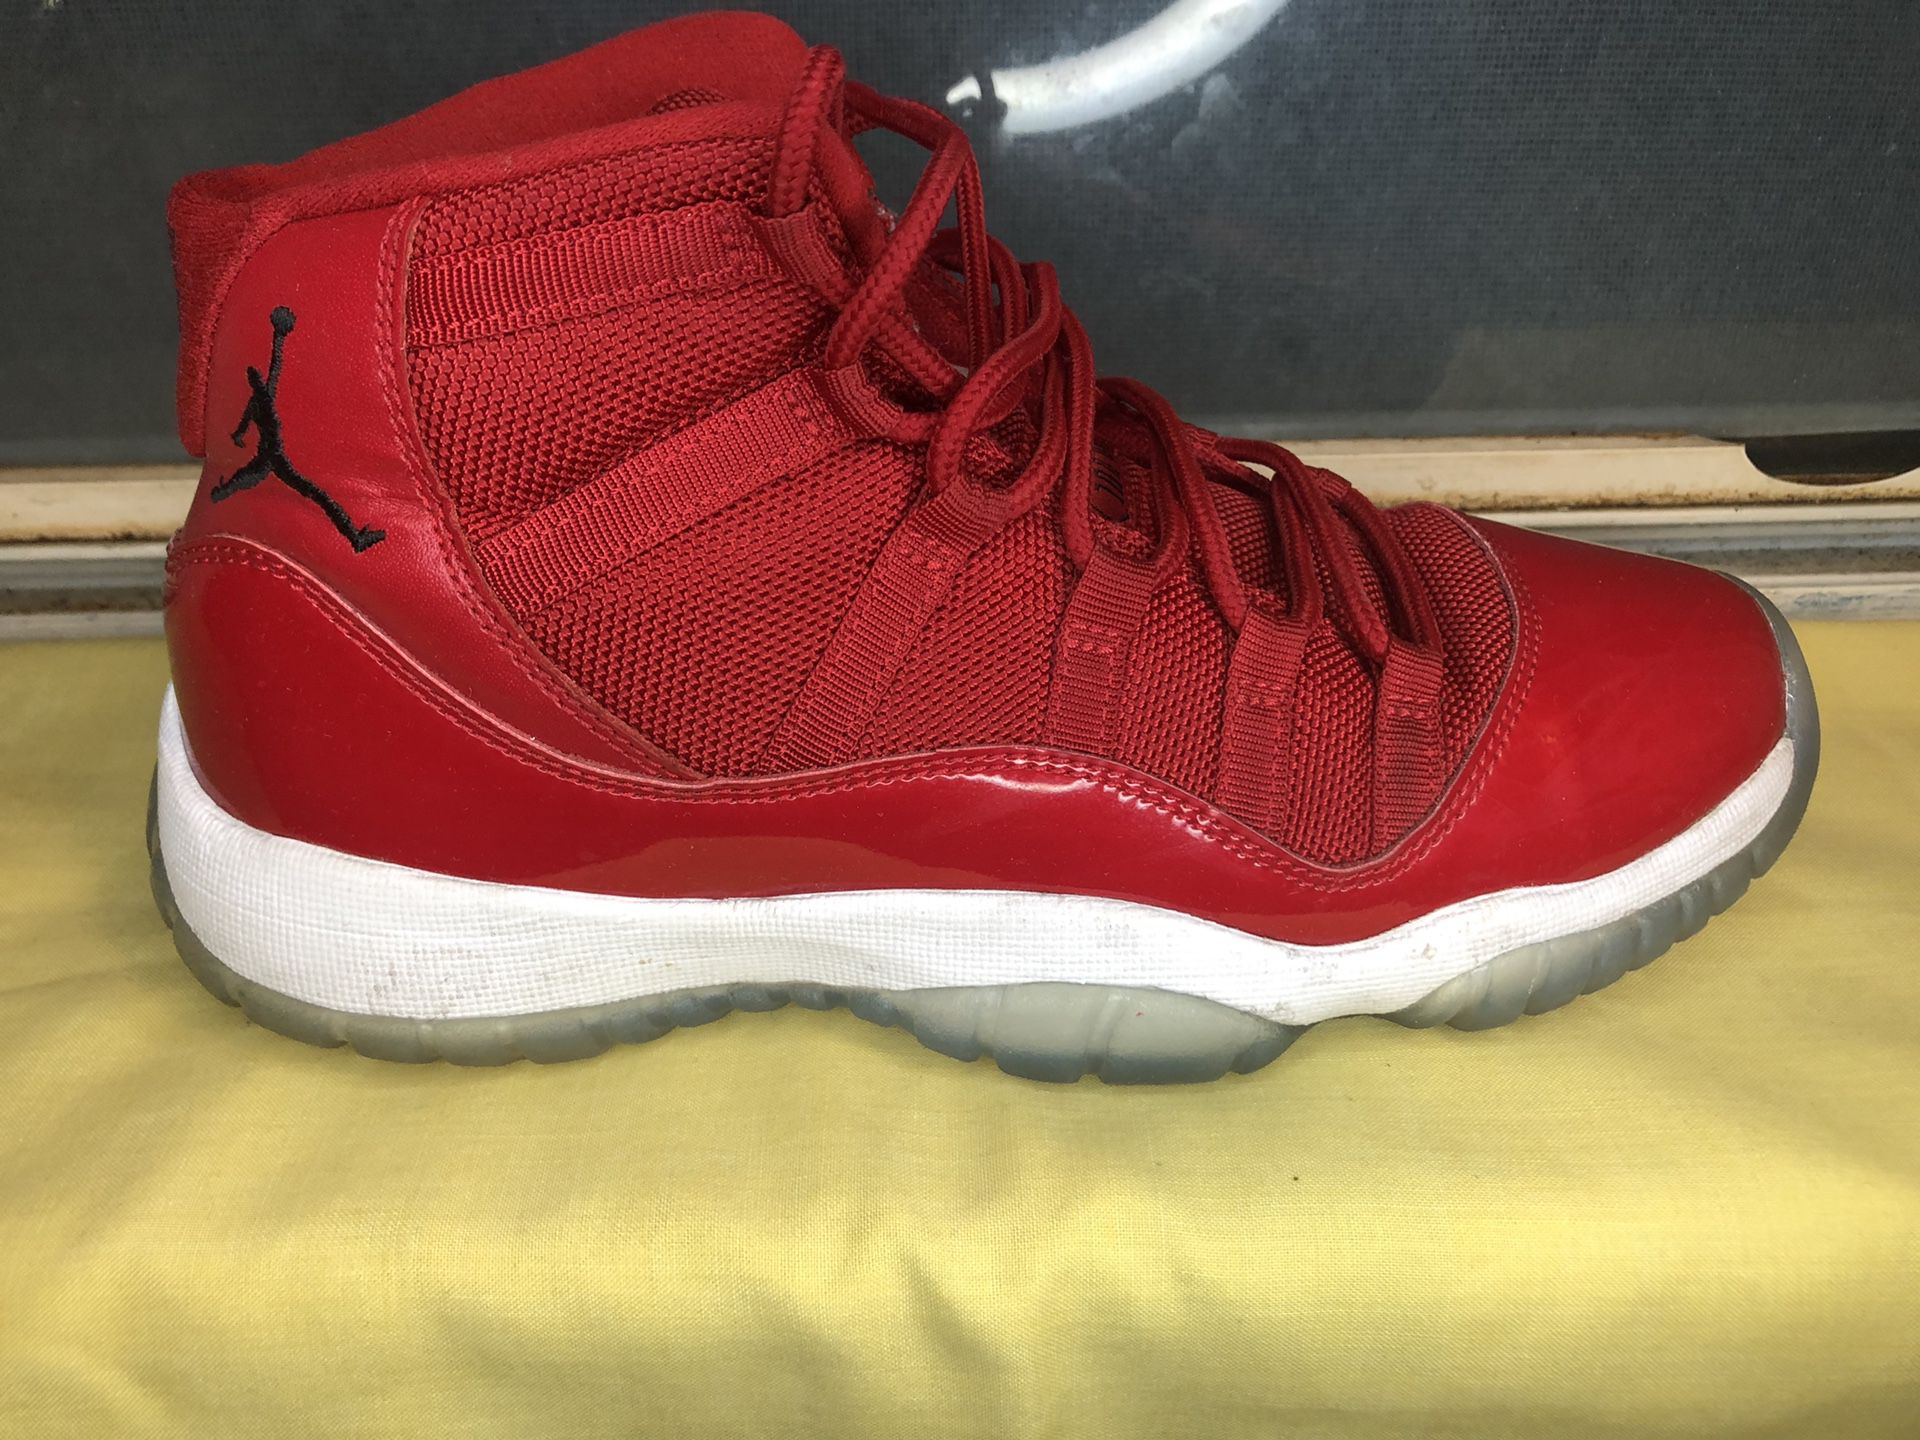 Red Jordan 11s